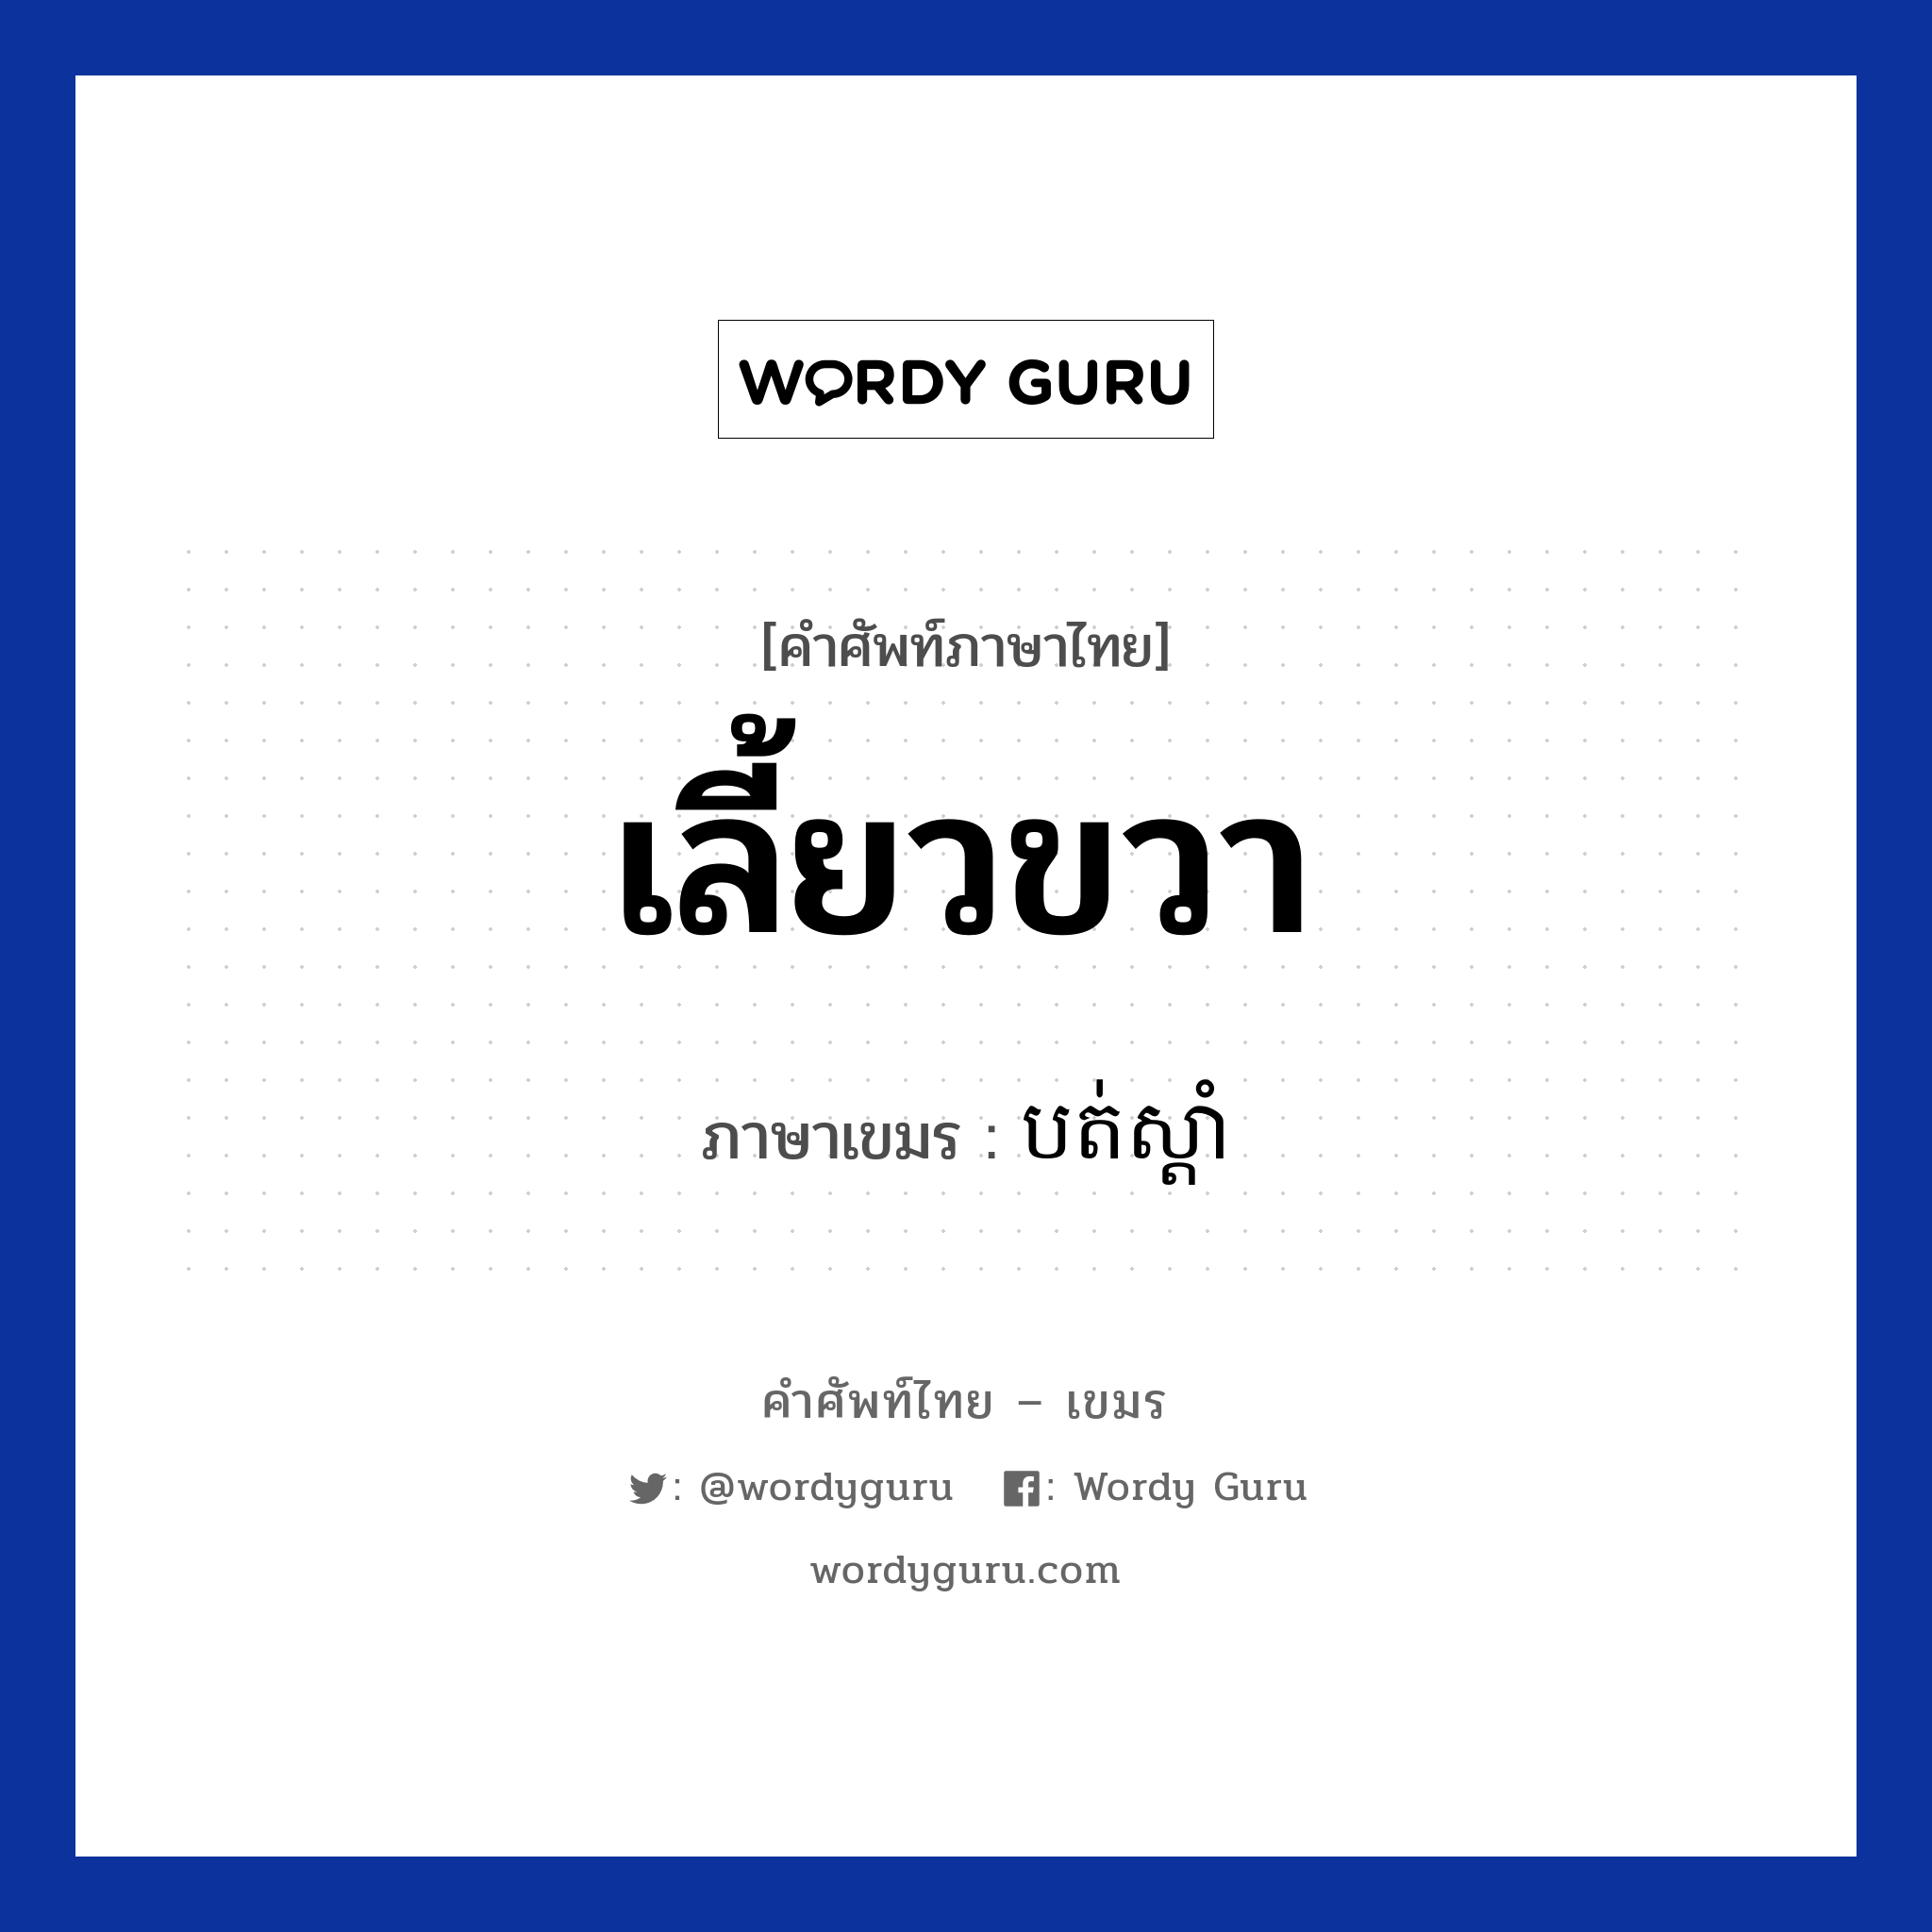 เลี้ยวขวา ภาษาเขมรคืออะไร, คำศัพท์ภาษาไทย - เขมร เลี้ยวขวา ภาษาเขมร បត់ស្តាំ หมวด การเดินทาง Bot sdam หมวด การเดินทาง